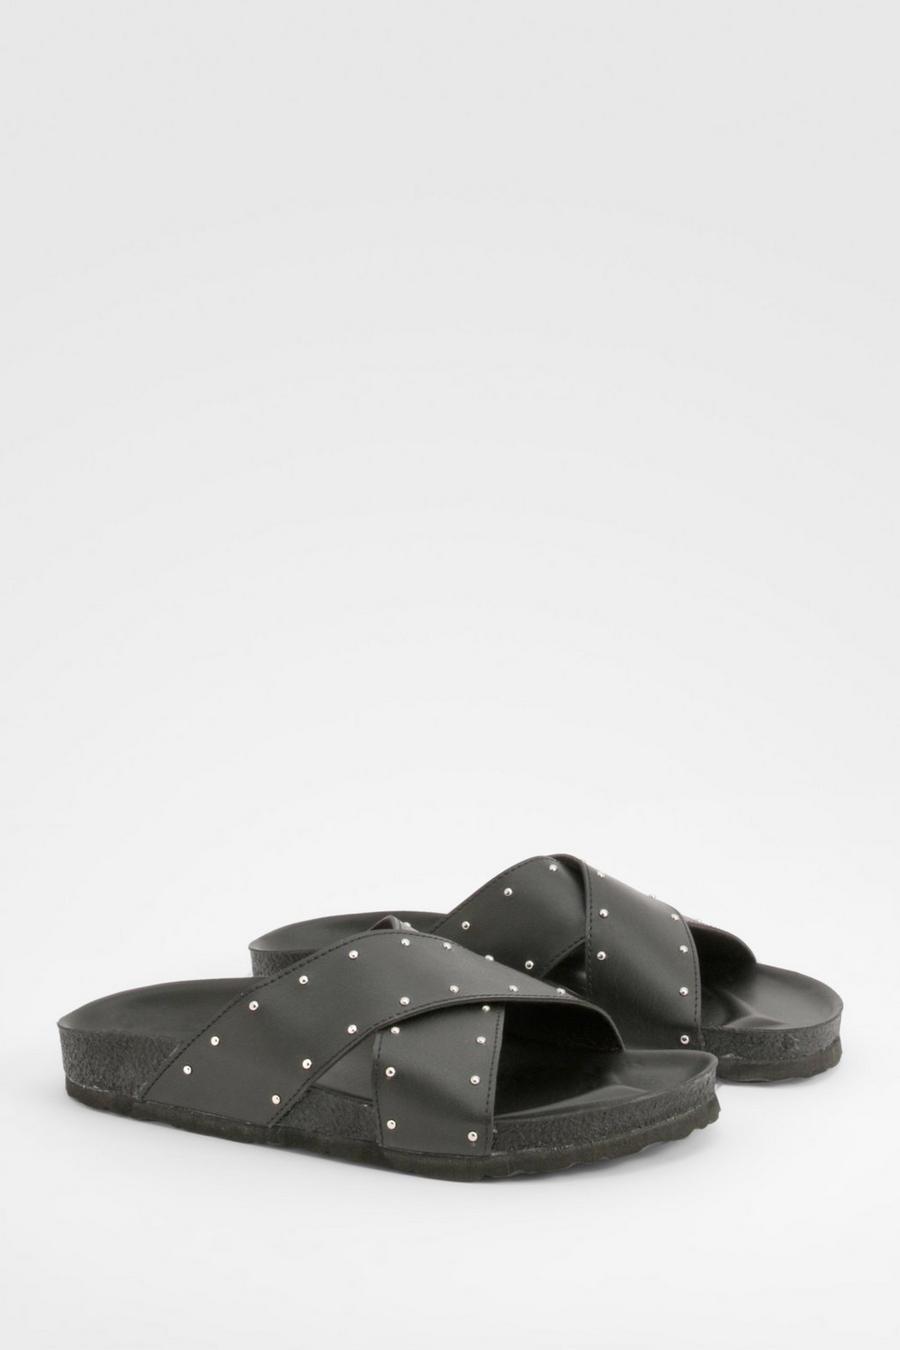 Sandalias de holgura ancha con plantilla blanda, tiras cruzadas y tachuelas, Black